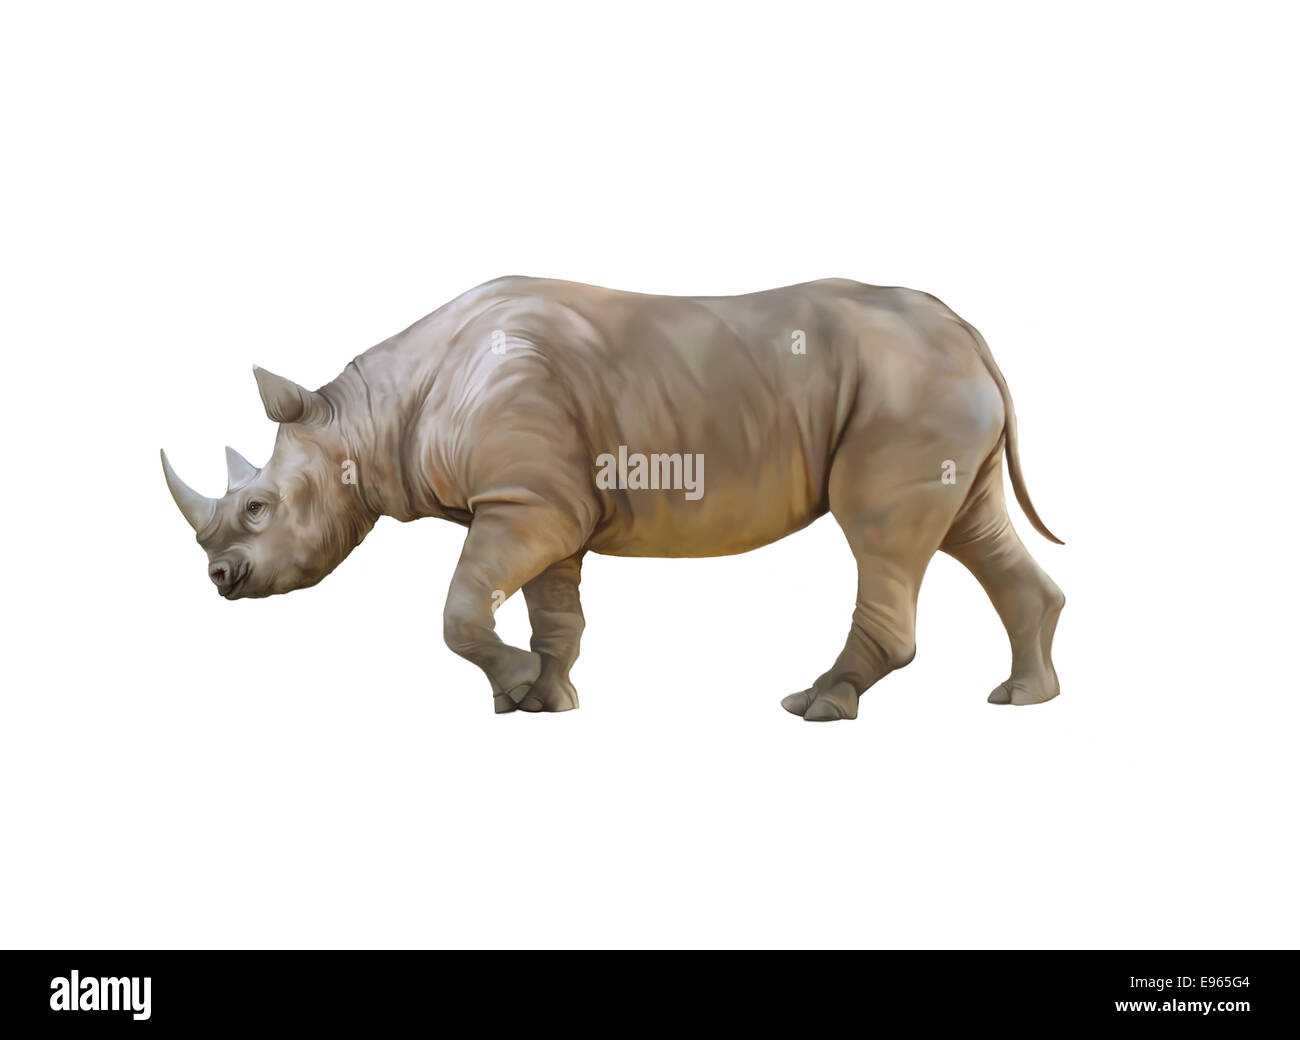 Gros Rhinocéros rhinocéros d'Afrique, isolé sur fond blanc Banque D'Images